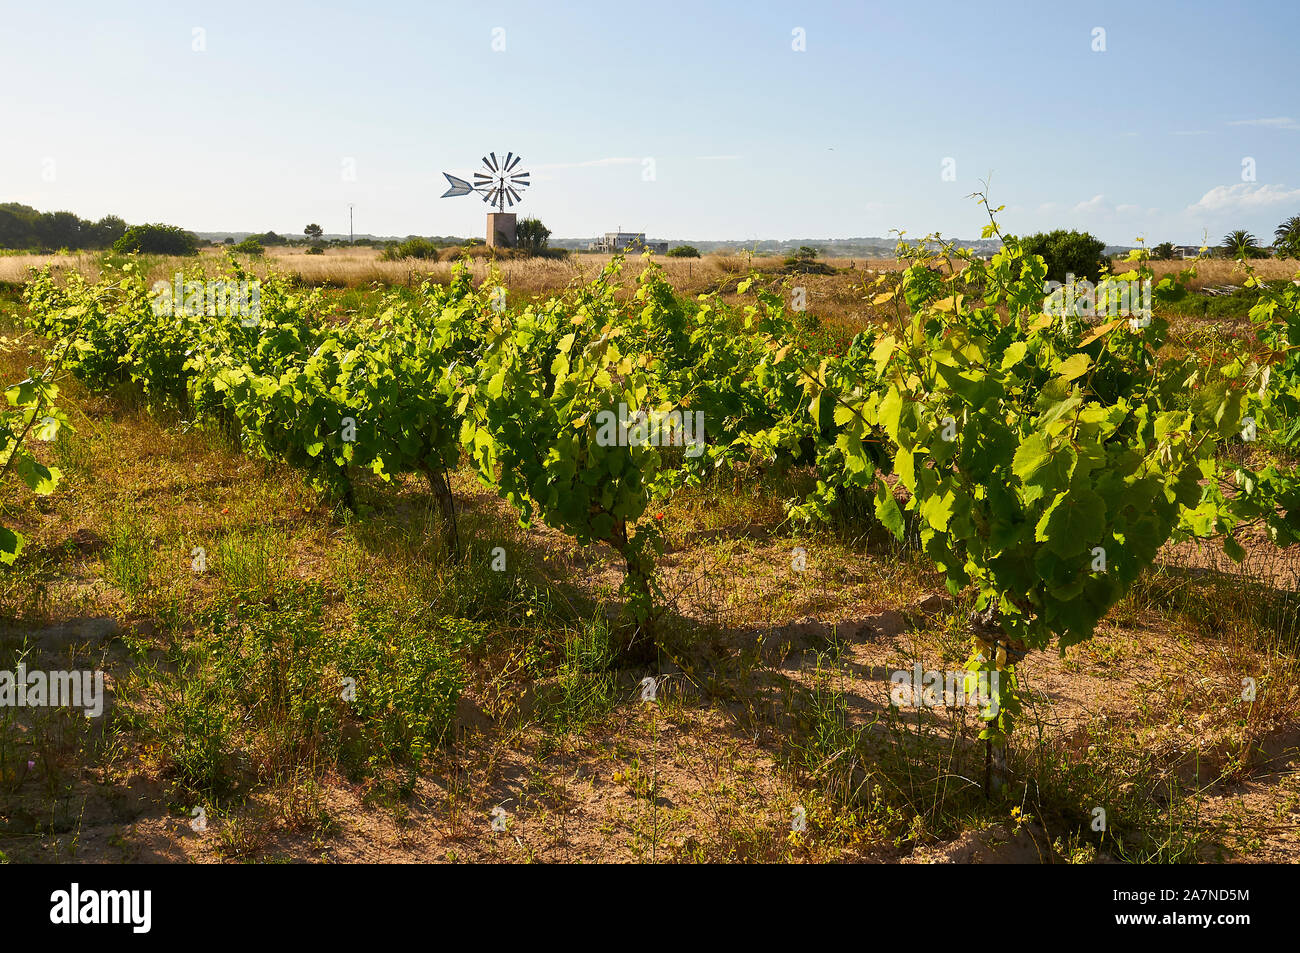 Traditionelle Weinbau in einer wachsenden Wein Weinreben (Vitis vinifera) Weinberg mit einer Windmühle in der Rückseite (Formentera, Balearen, Spanien) Stockfoto